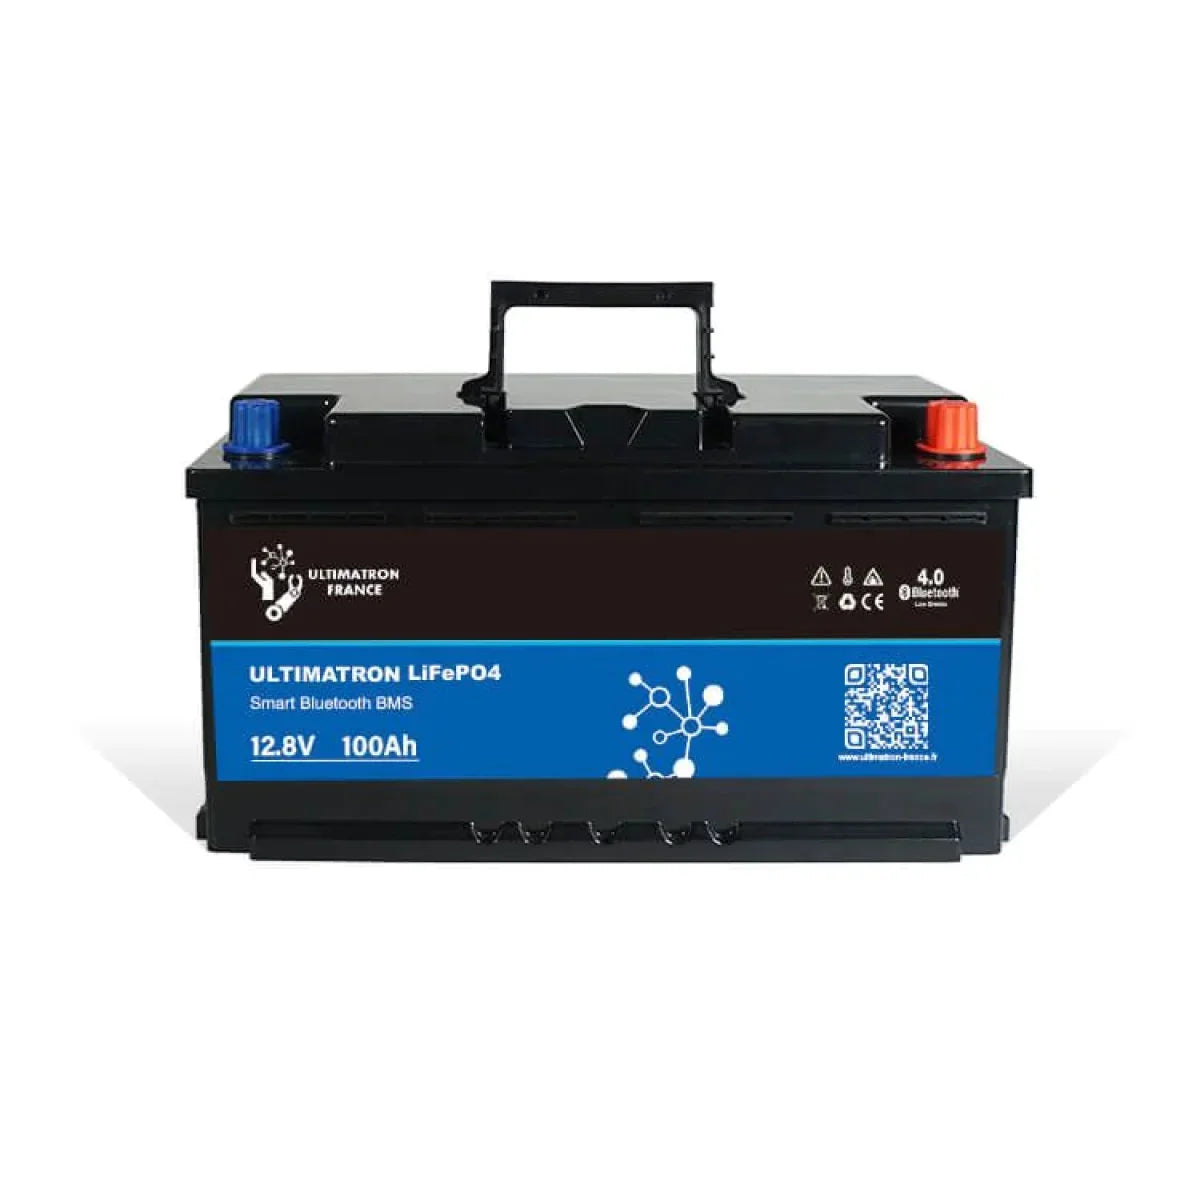 LiFePo4 Lithium Batterien » jetzt kaufen